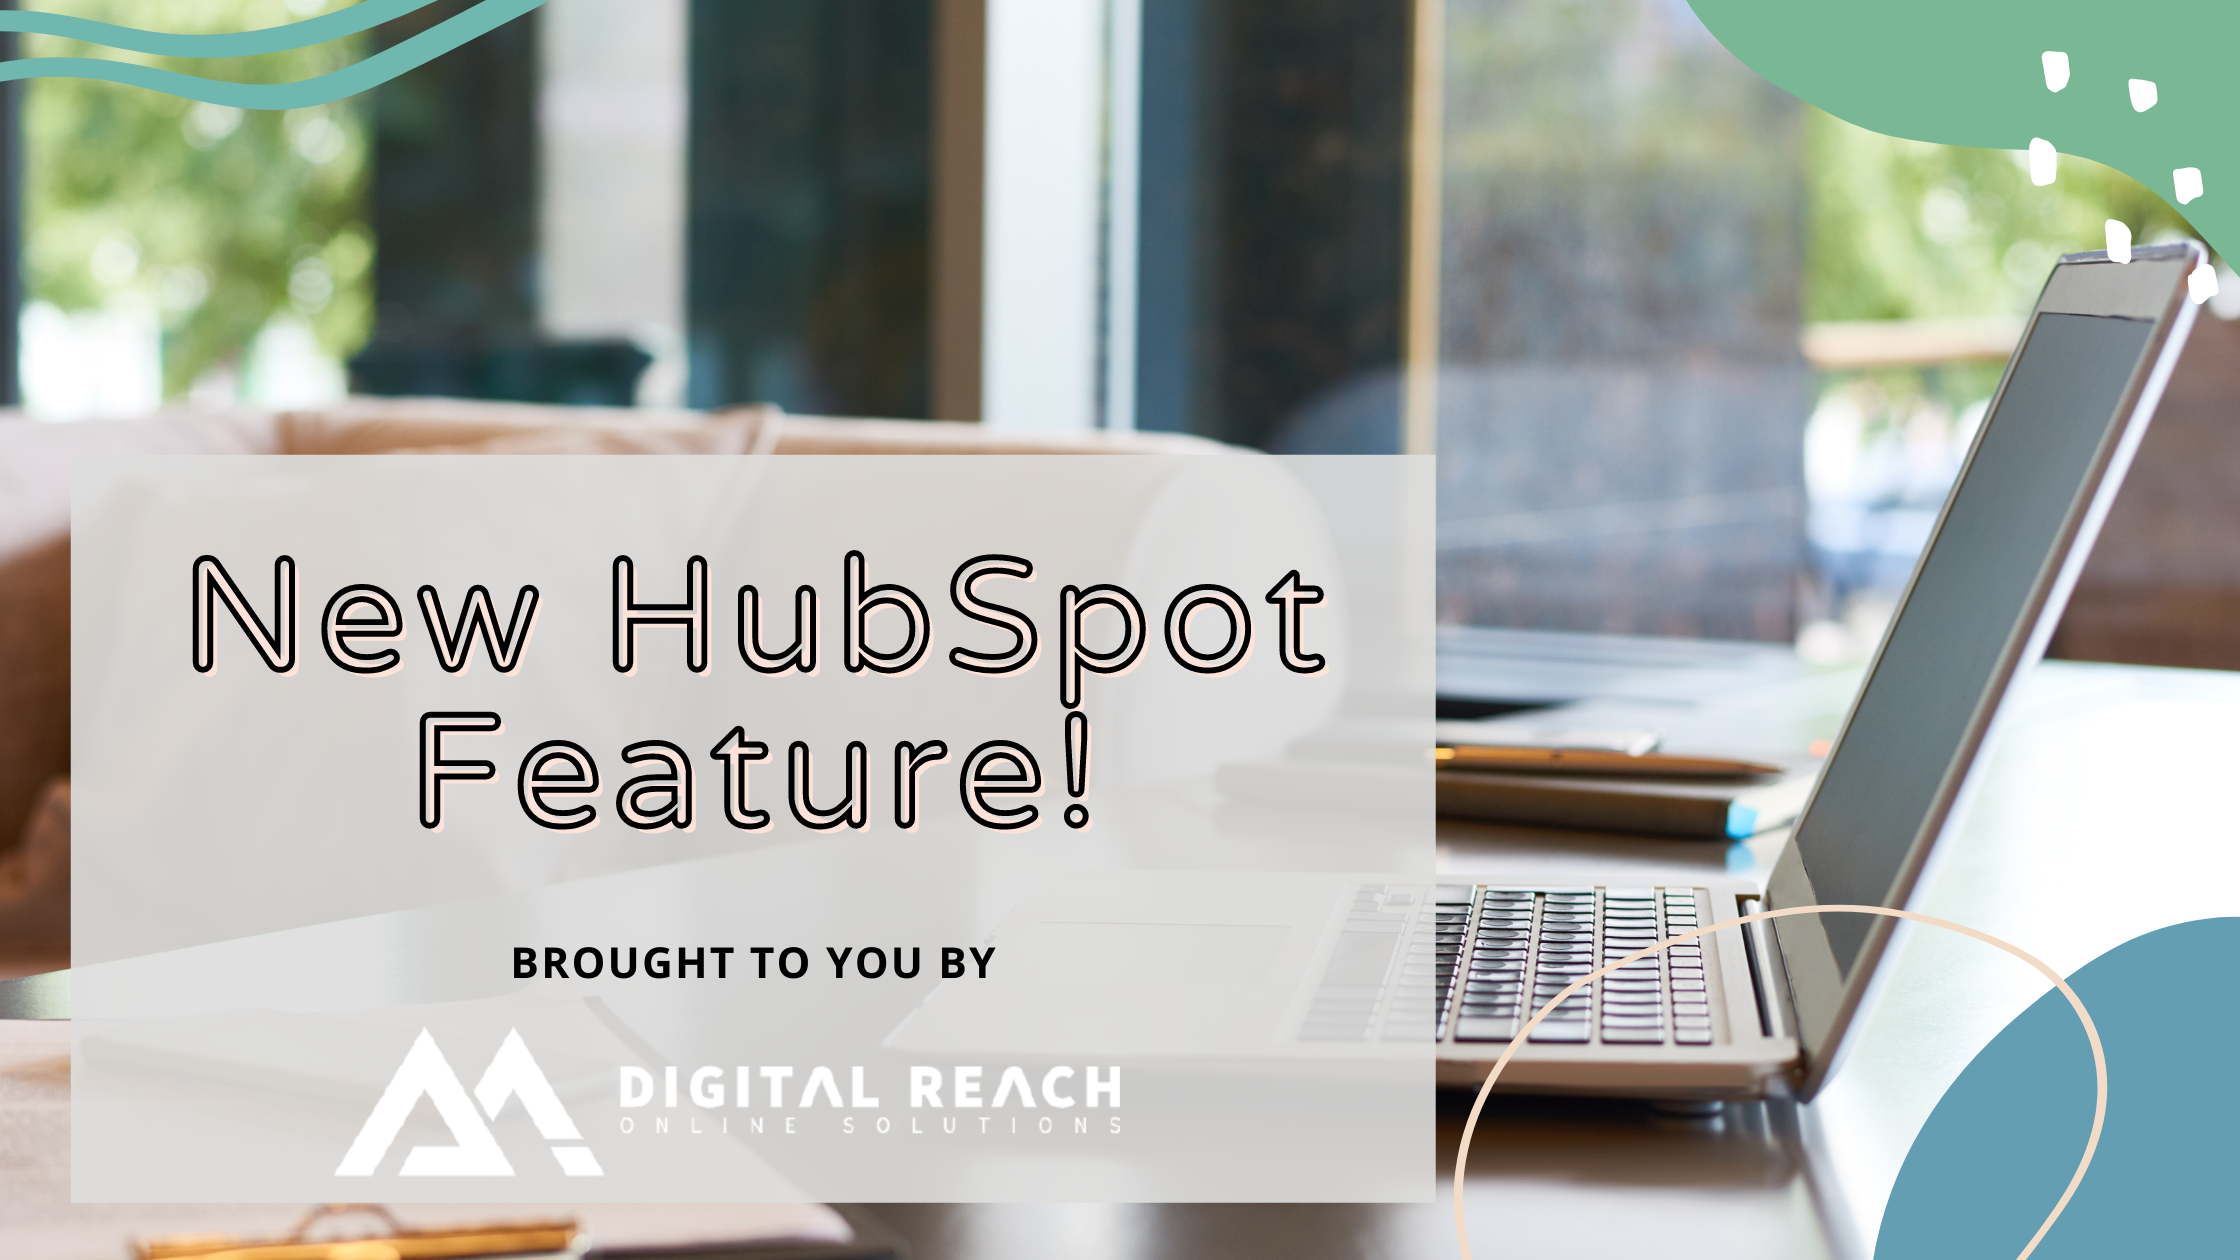 New HubSpot Feature!